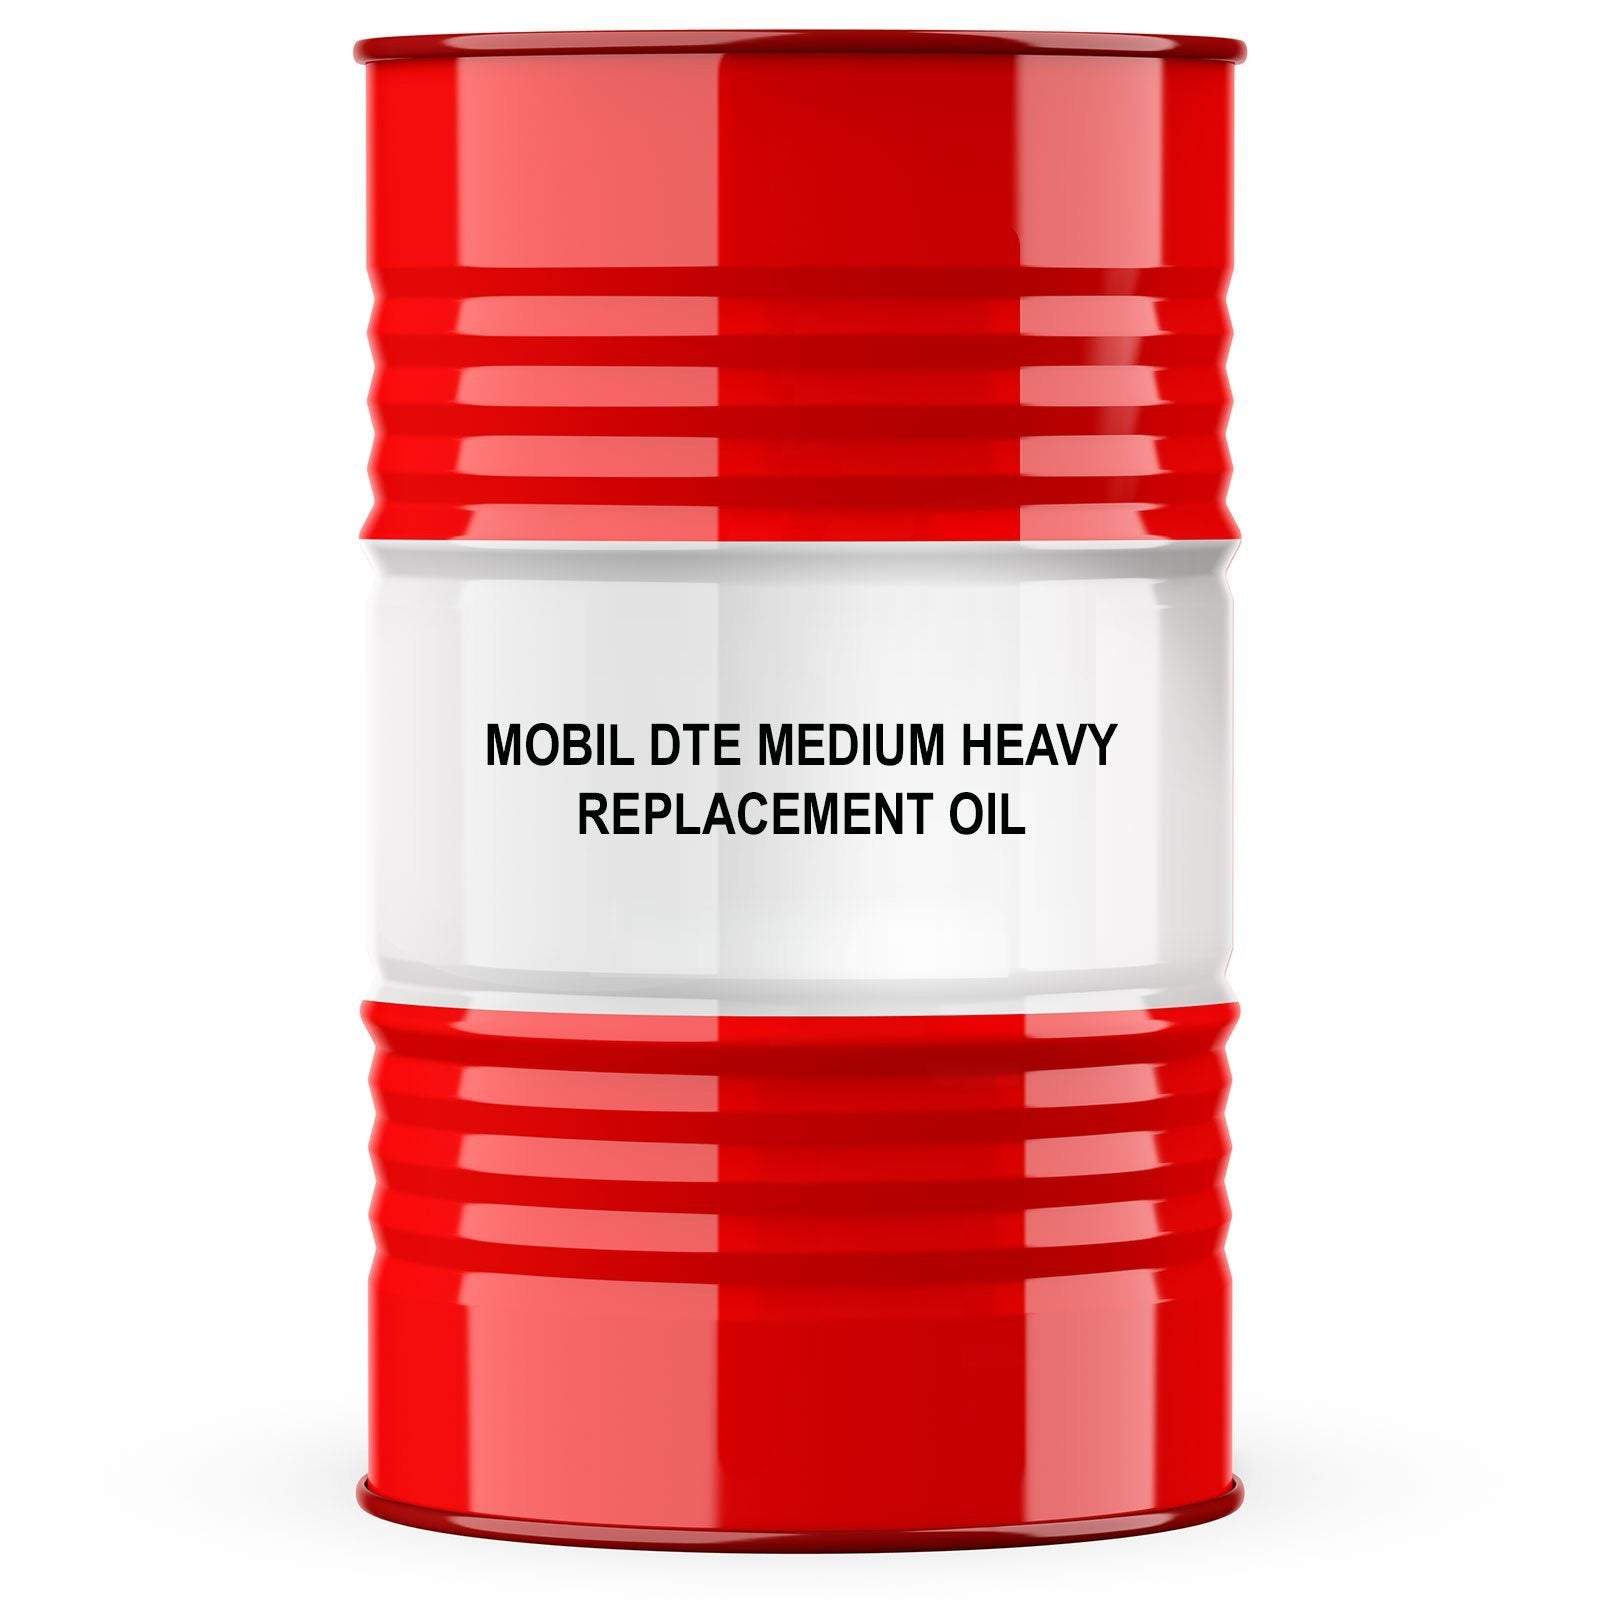 Mobil DTE Medium Heavy Replacement Oil Turbine Oil BuySinopec.com 55 Gallon Drum 